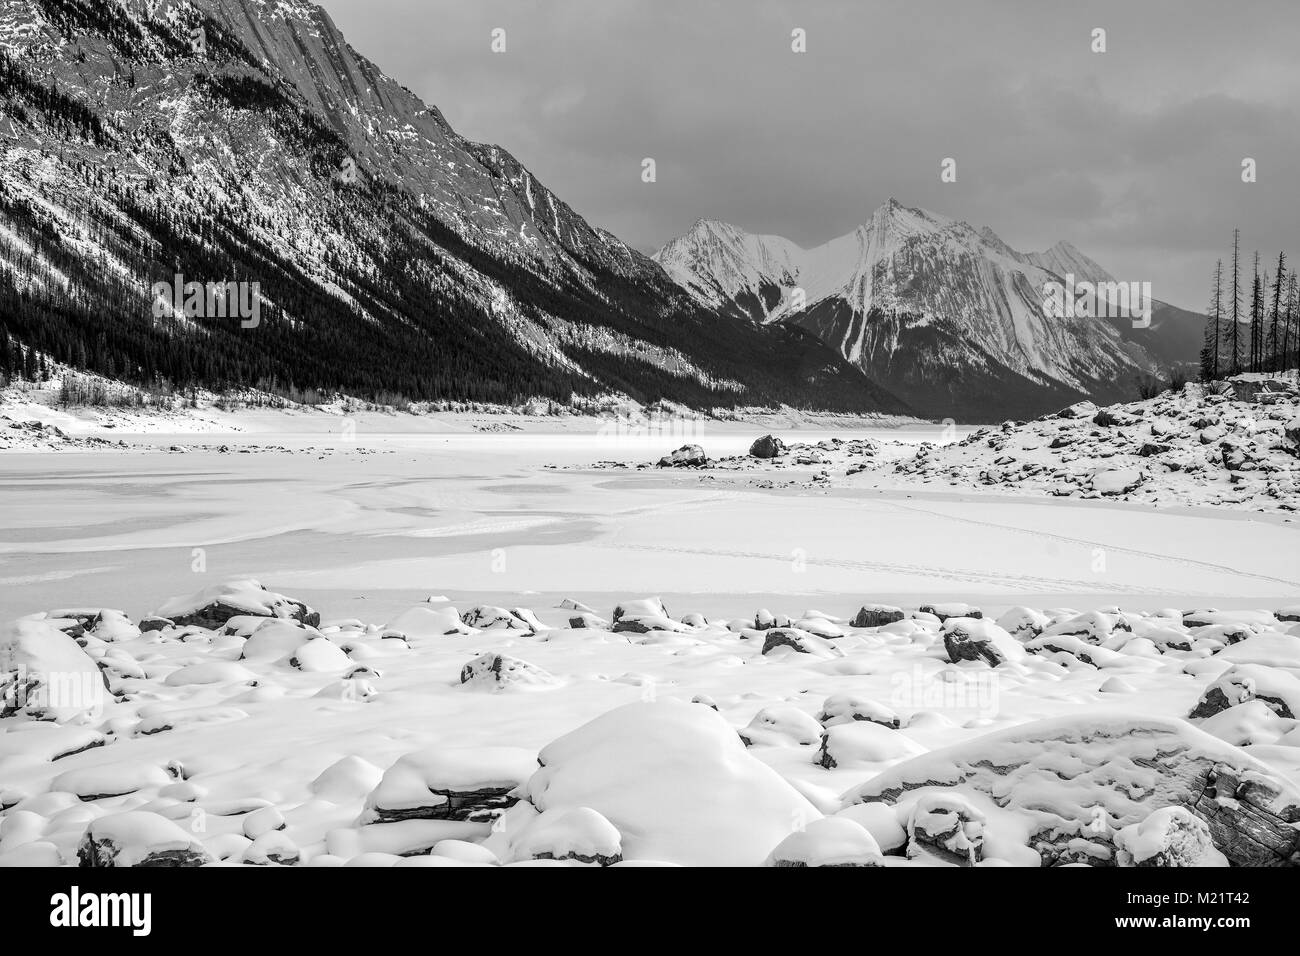 Le format panorama photo d'un paysage hivernal de la médecine lac gelé entouré par les rocheuses canadiennes dans le parc national de Banff, Alberta, Canada Banque D'Images